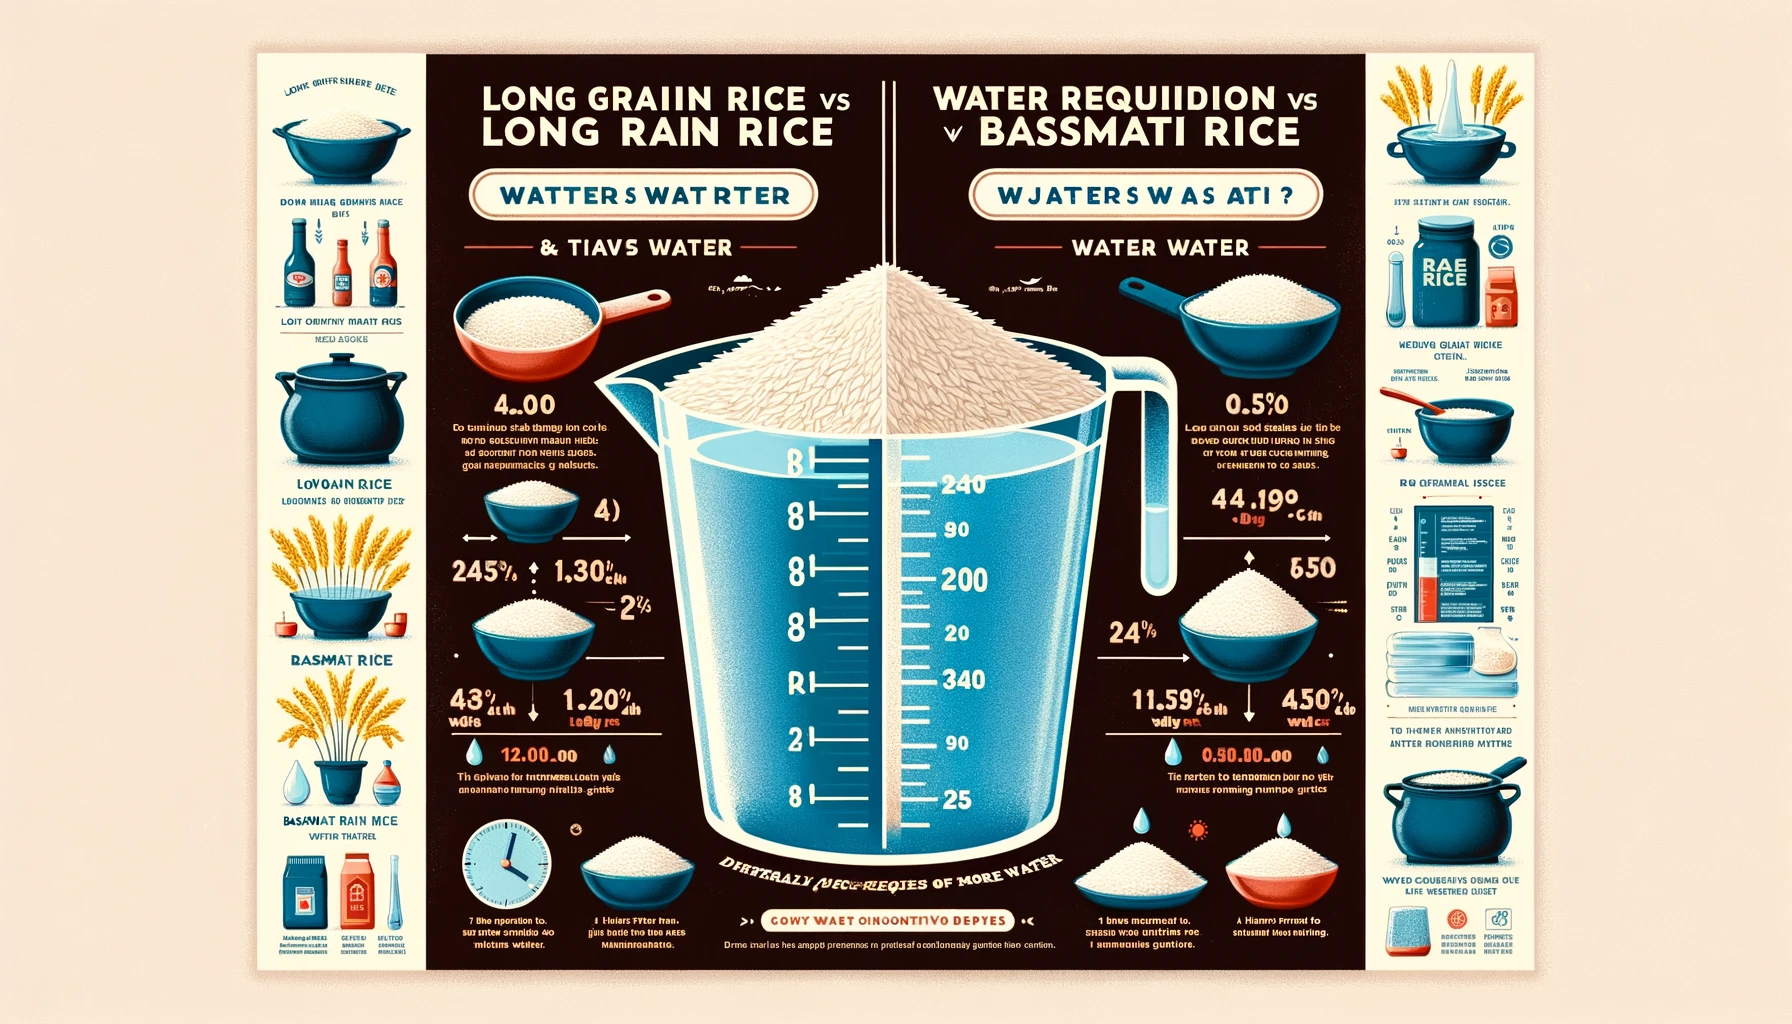 does long grain rice need more water than basmati